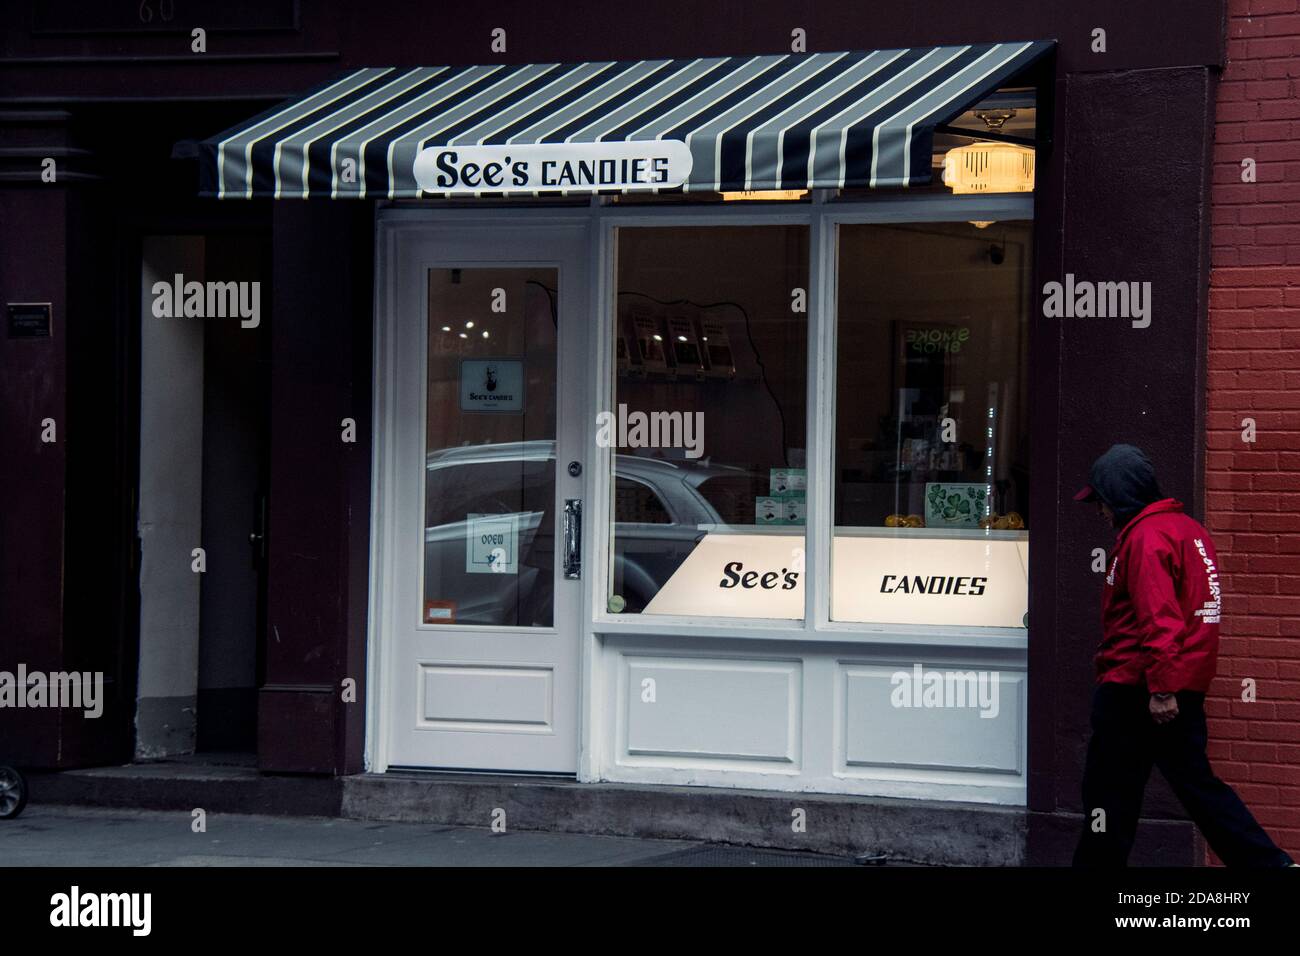 La boutique de Greenwich Village des Candies de See se trouve au 60 W. 8th Street, le seul magasin de détail de See à New York, aux États-Unis d'Amérique Banque D'Images